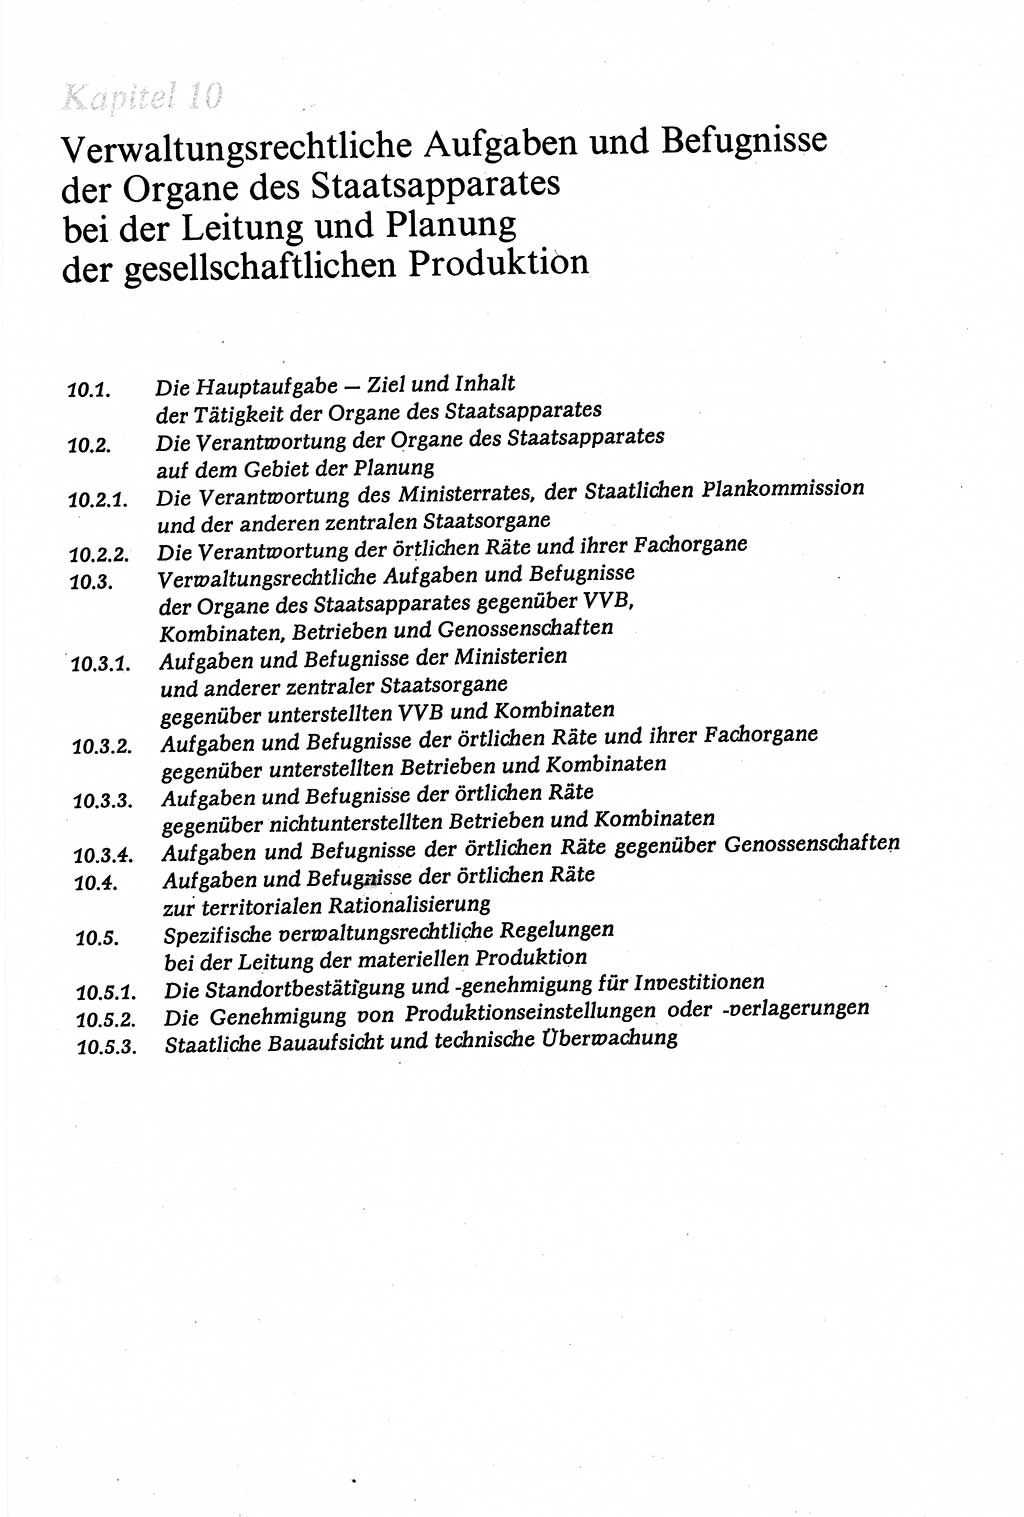 Verwaltungsrecht [Deutsche Demokratische Republik (DDR)], Lehrbuch 1979, Seite 361 (Verw.-R. DDR Lb. 1979, S. 361)